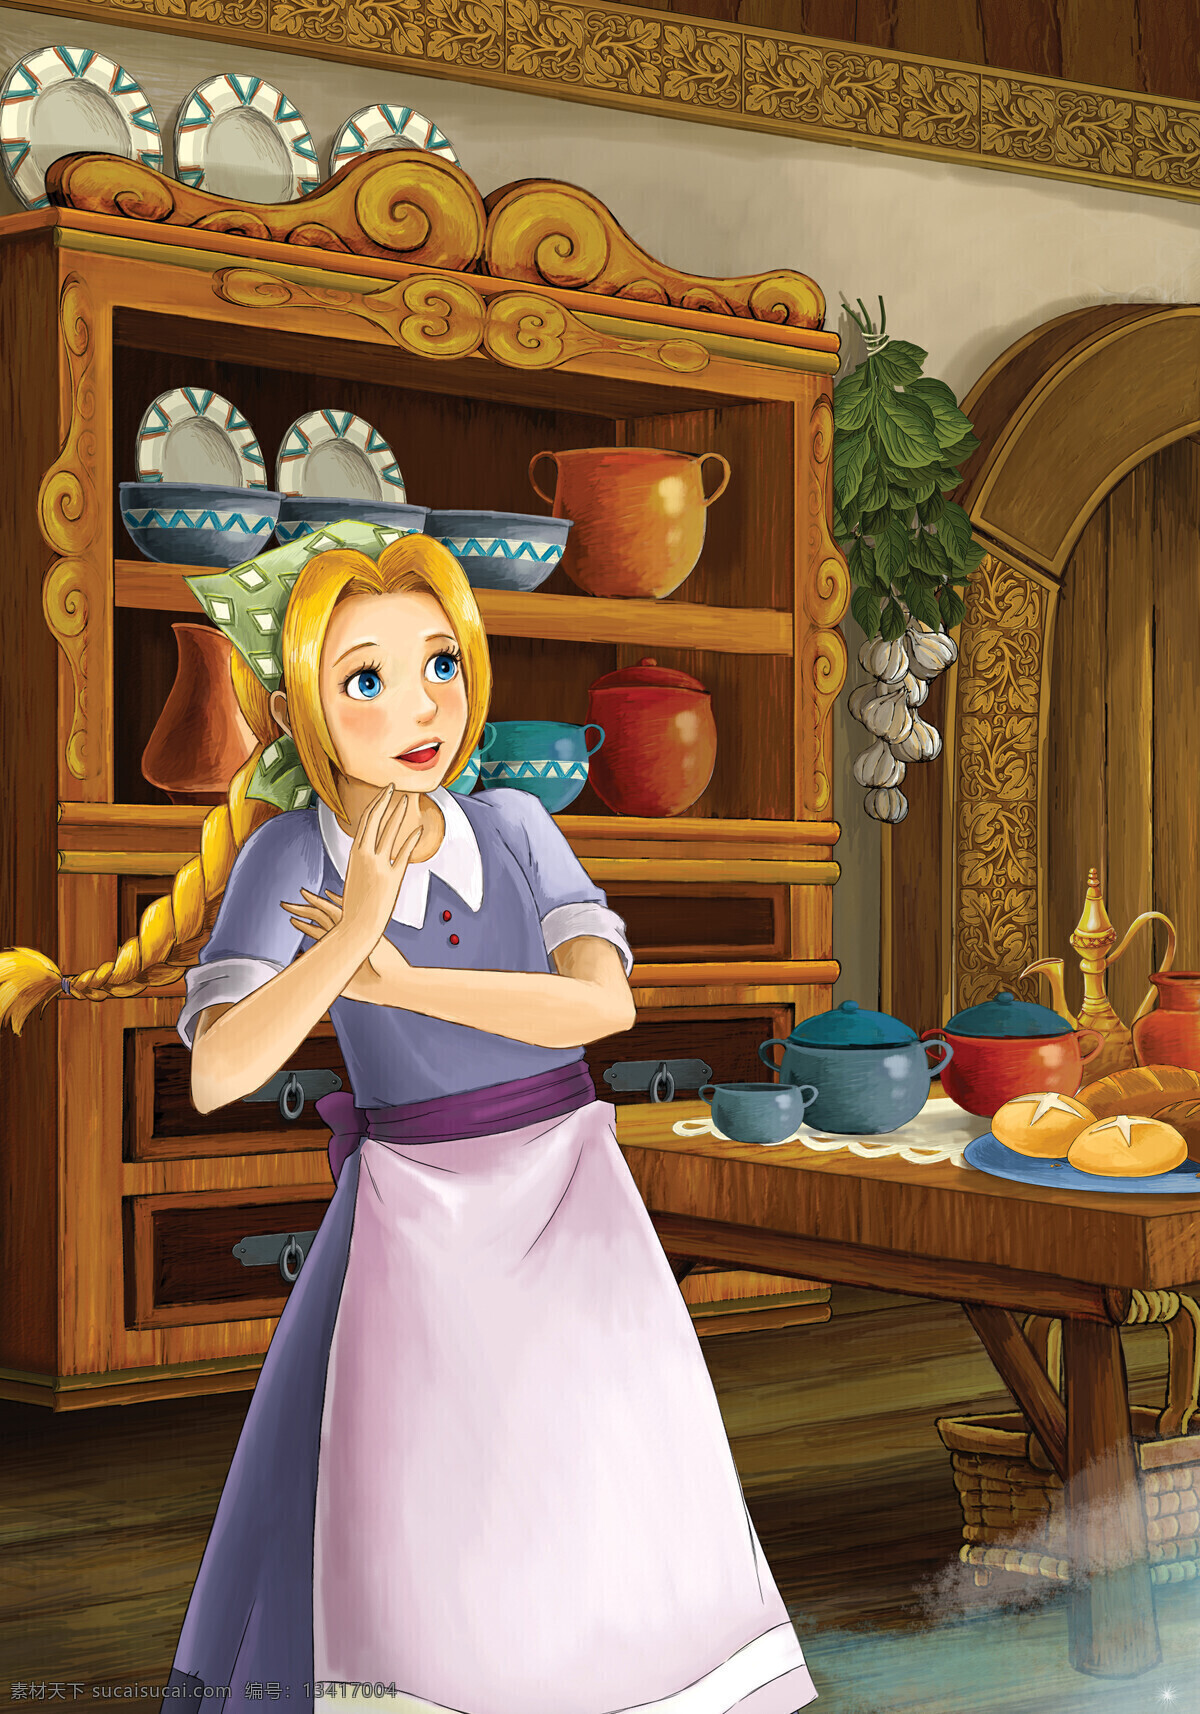 做饭 的卡 通 少女 厨房 美女 卡通人物 童话 人物图片